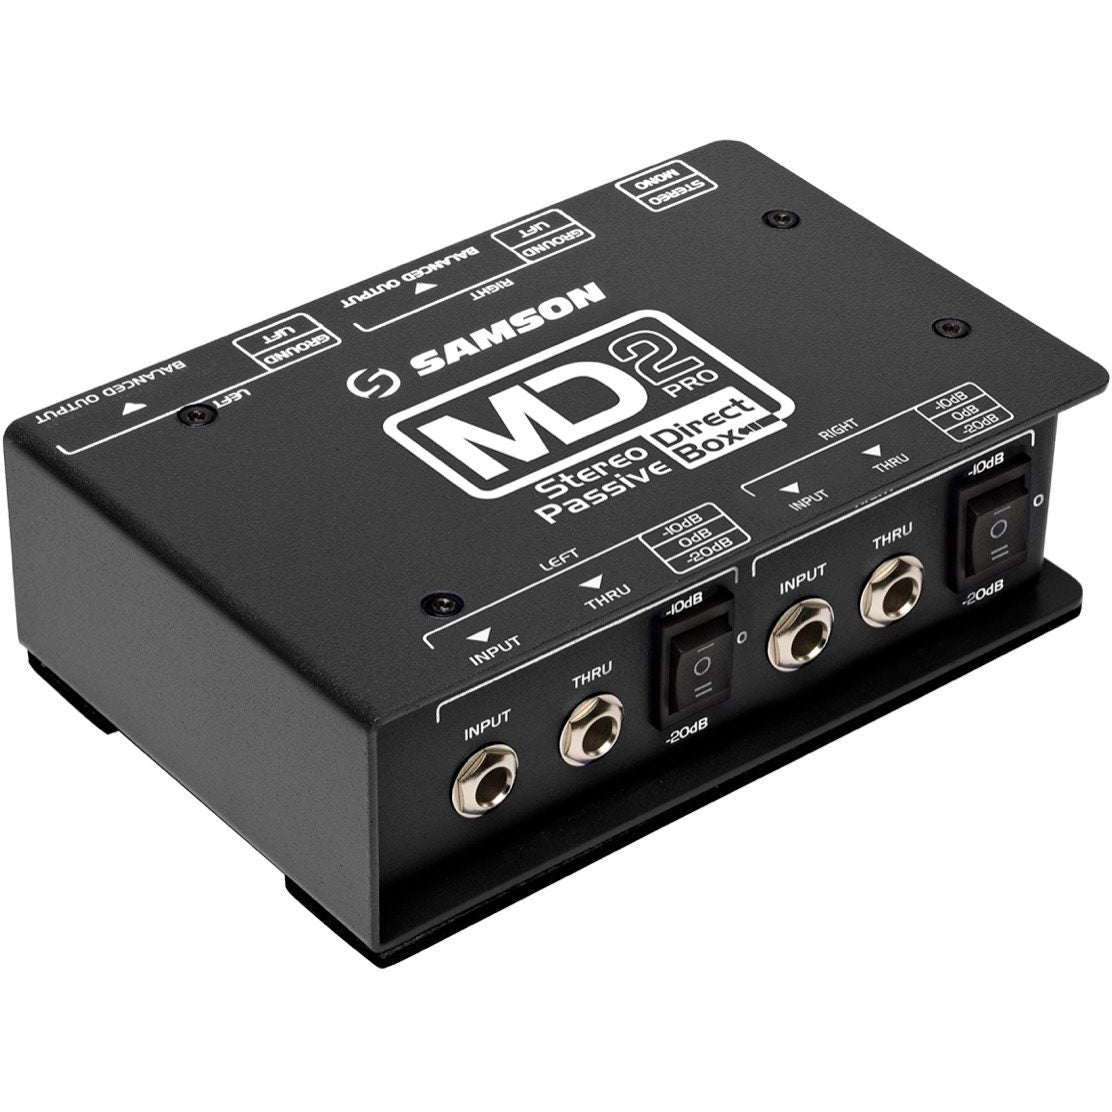 Samson MD2 Pro Stereo Passive Direct Box